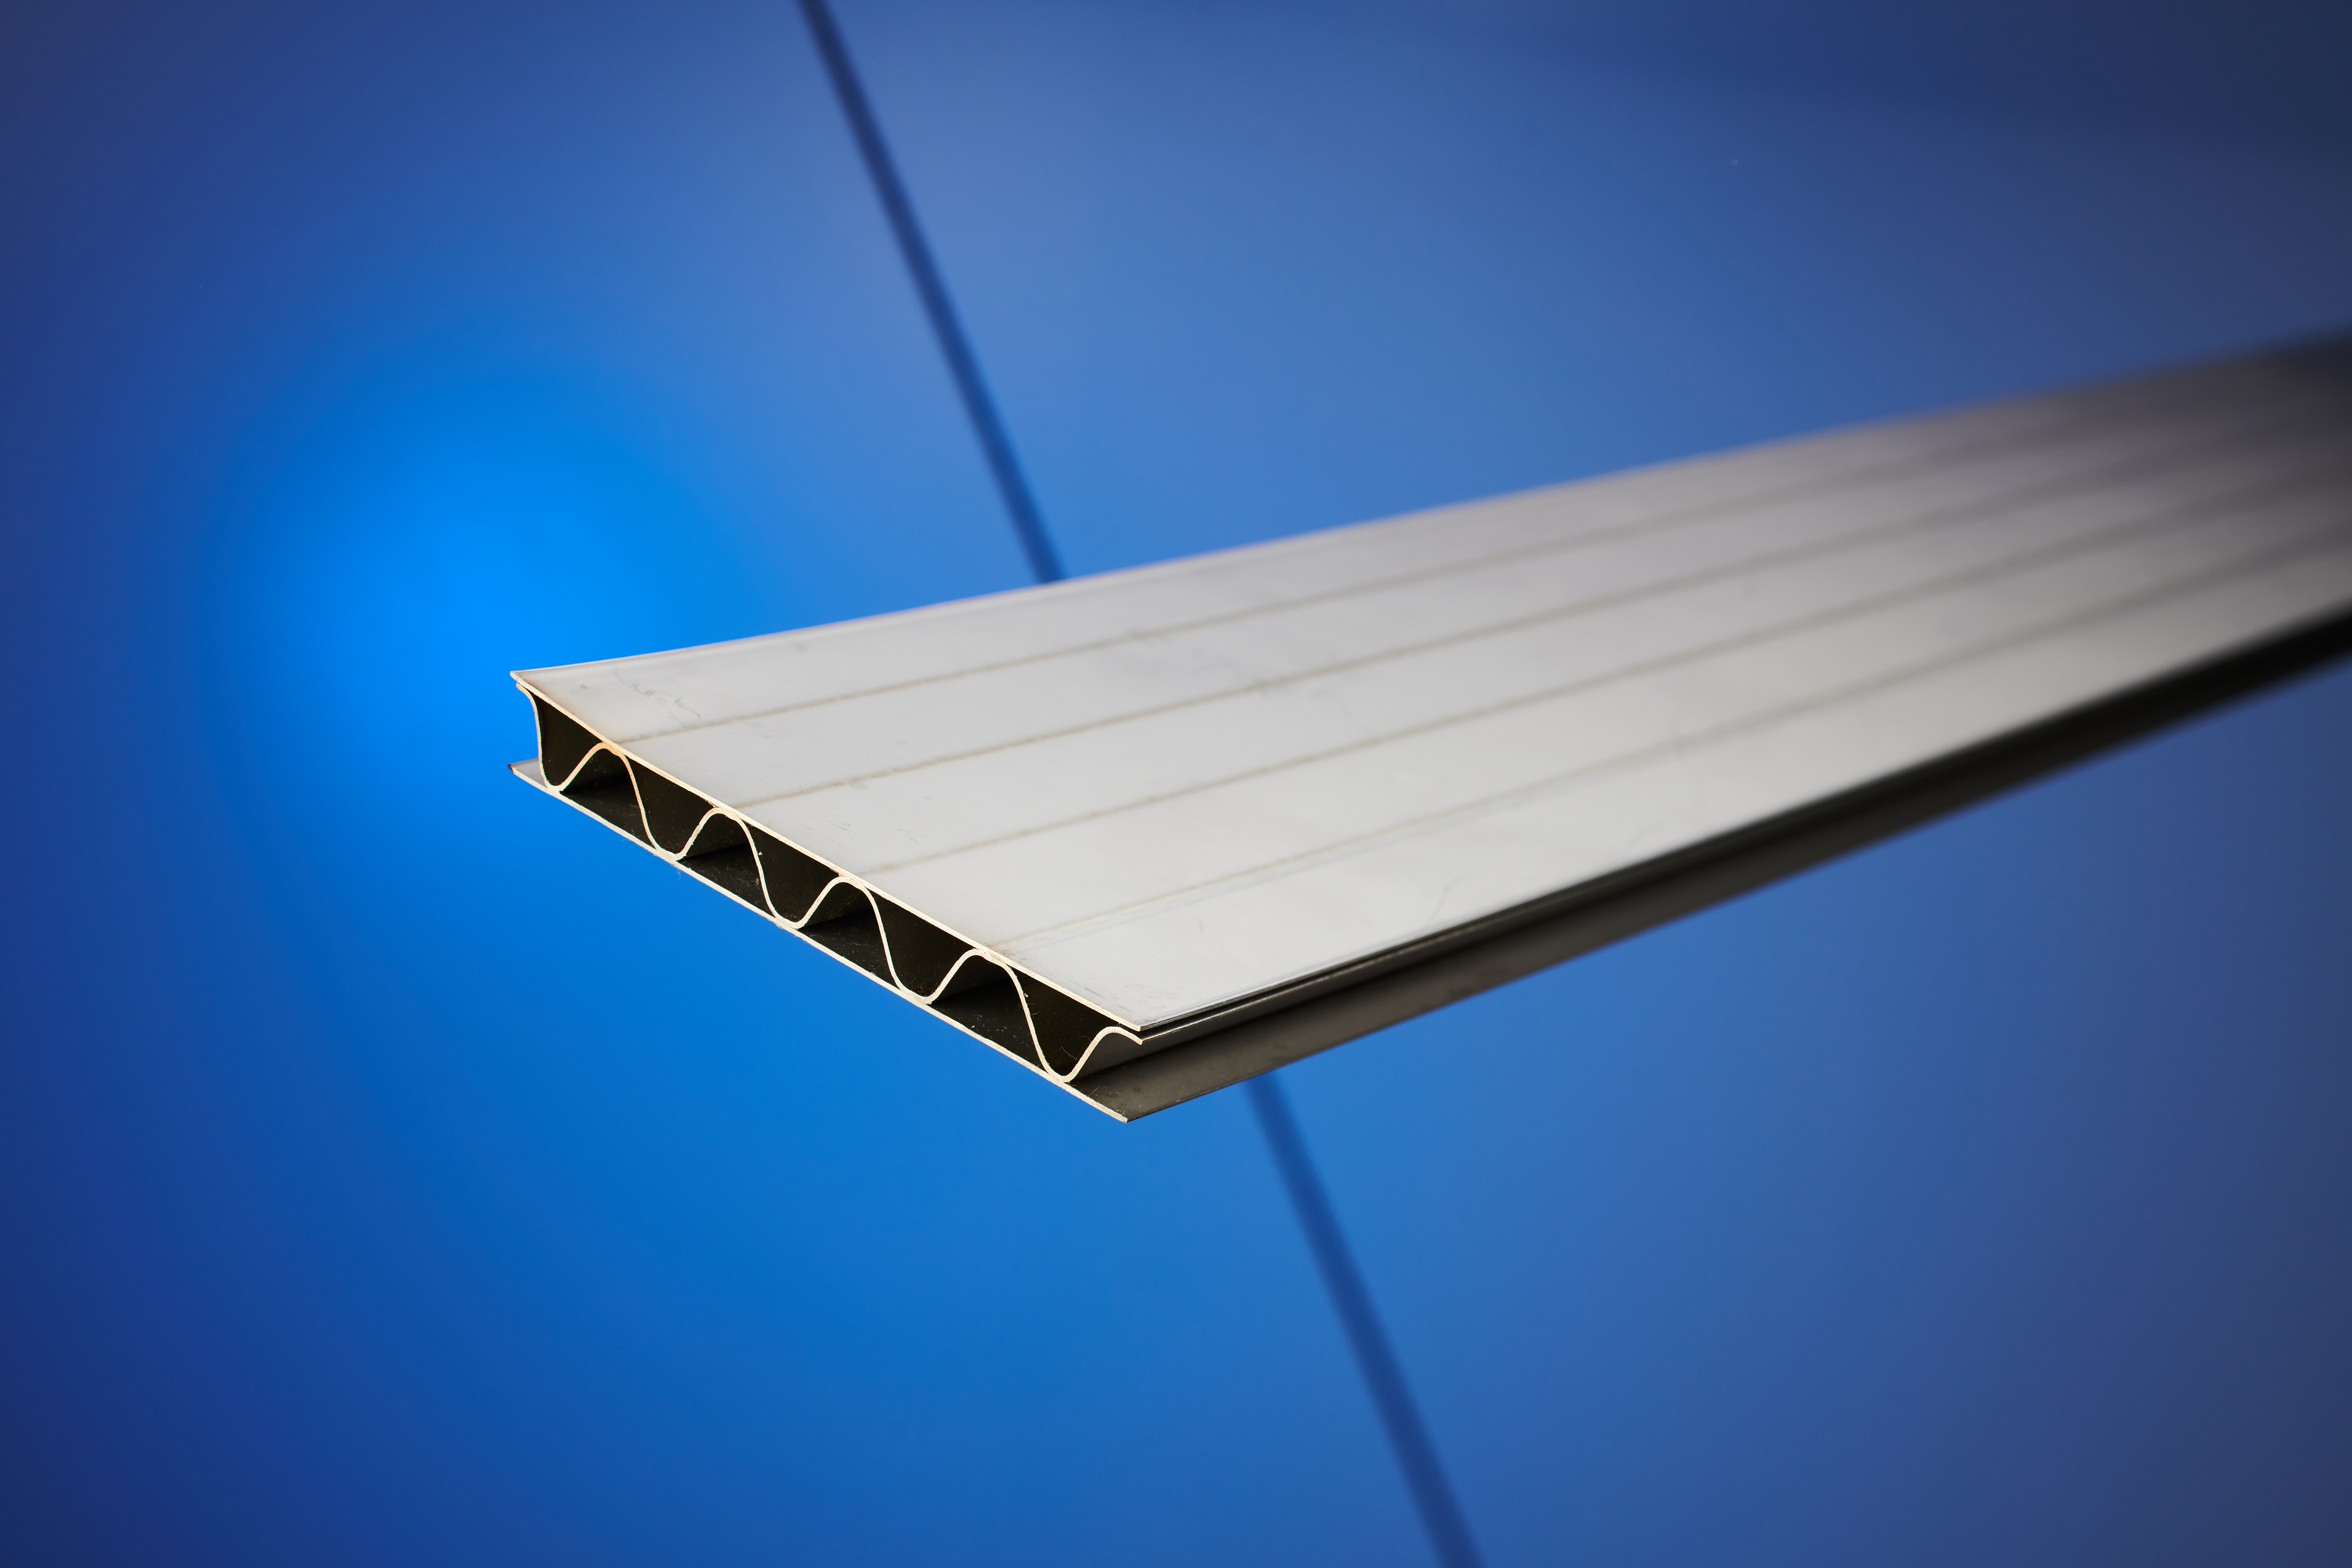 Statt massiver Stahlplatten kommen im Leichtbau häufig Sandwichplatten zum Einsatz. Das neue Laserverfahren des Fraunhofer IWS verschweißt filigrane Hohlkammerstrukturen mit Deckblechen.